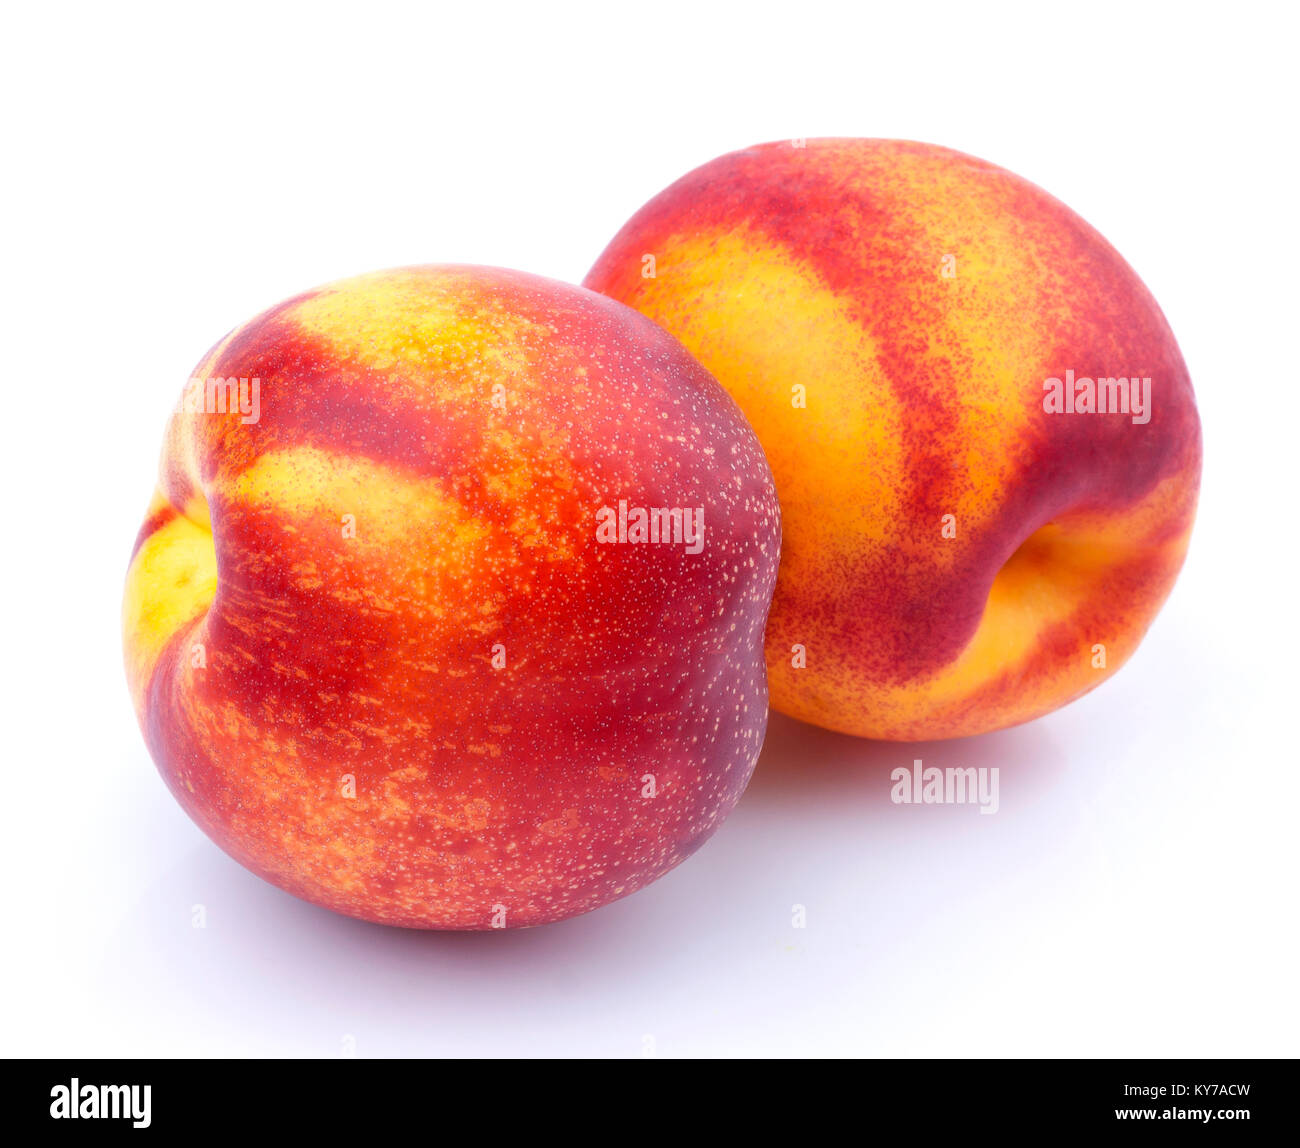 https://c8.alamy.com/comp/KY7ACW/whole-nectarine-fruit-isolated-on-white-background-KY7ACW.jpg